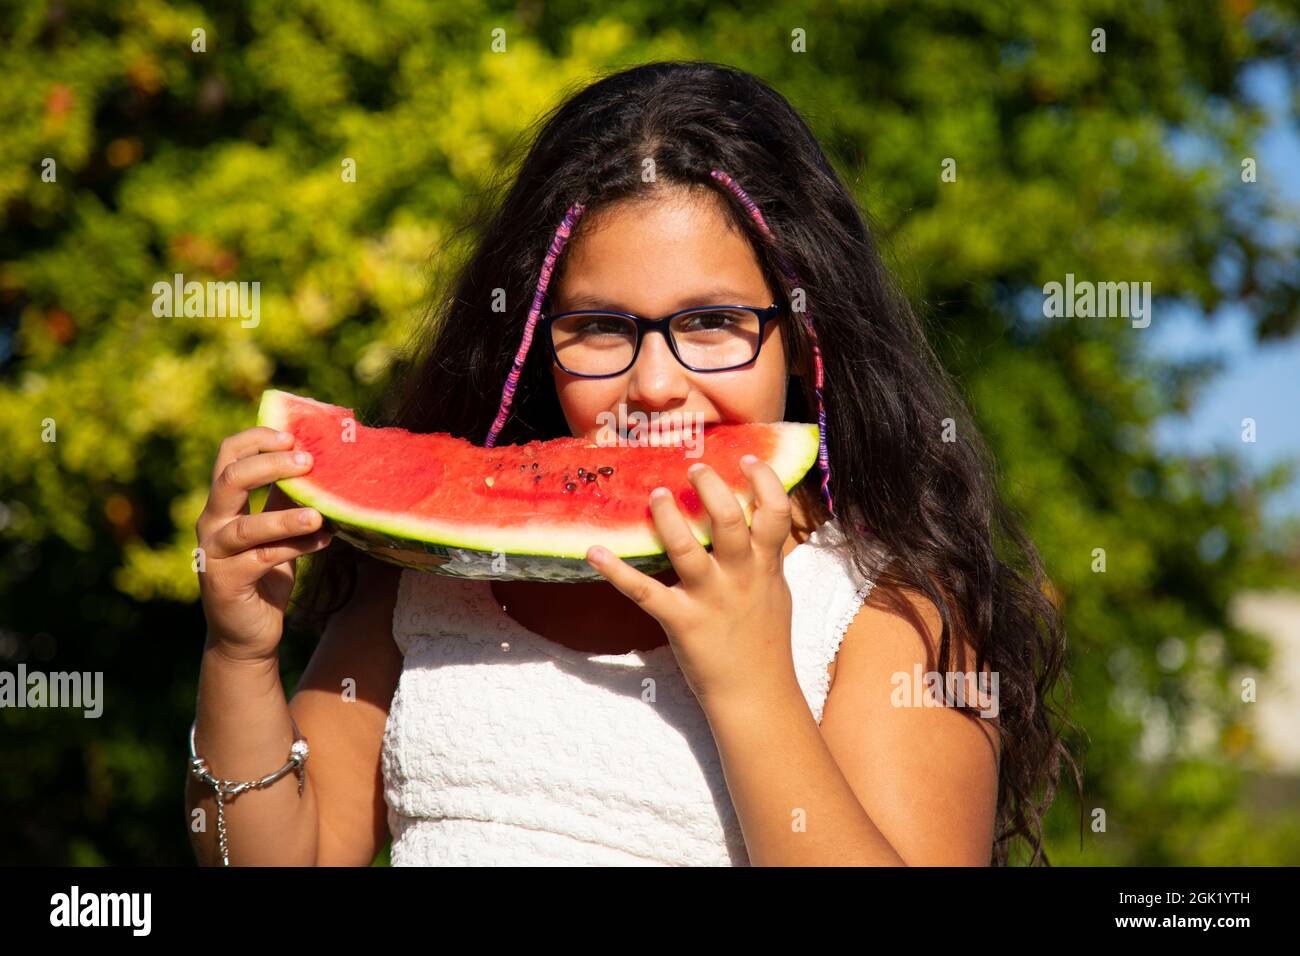 une fille gitane aux cheveux longs noirs mange la grande tranche de pastèque Banque D'Images